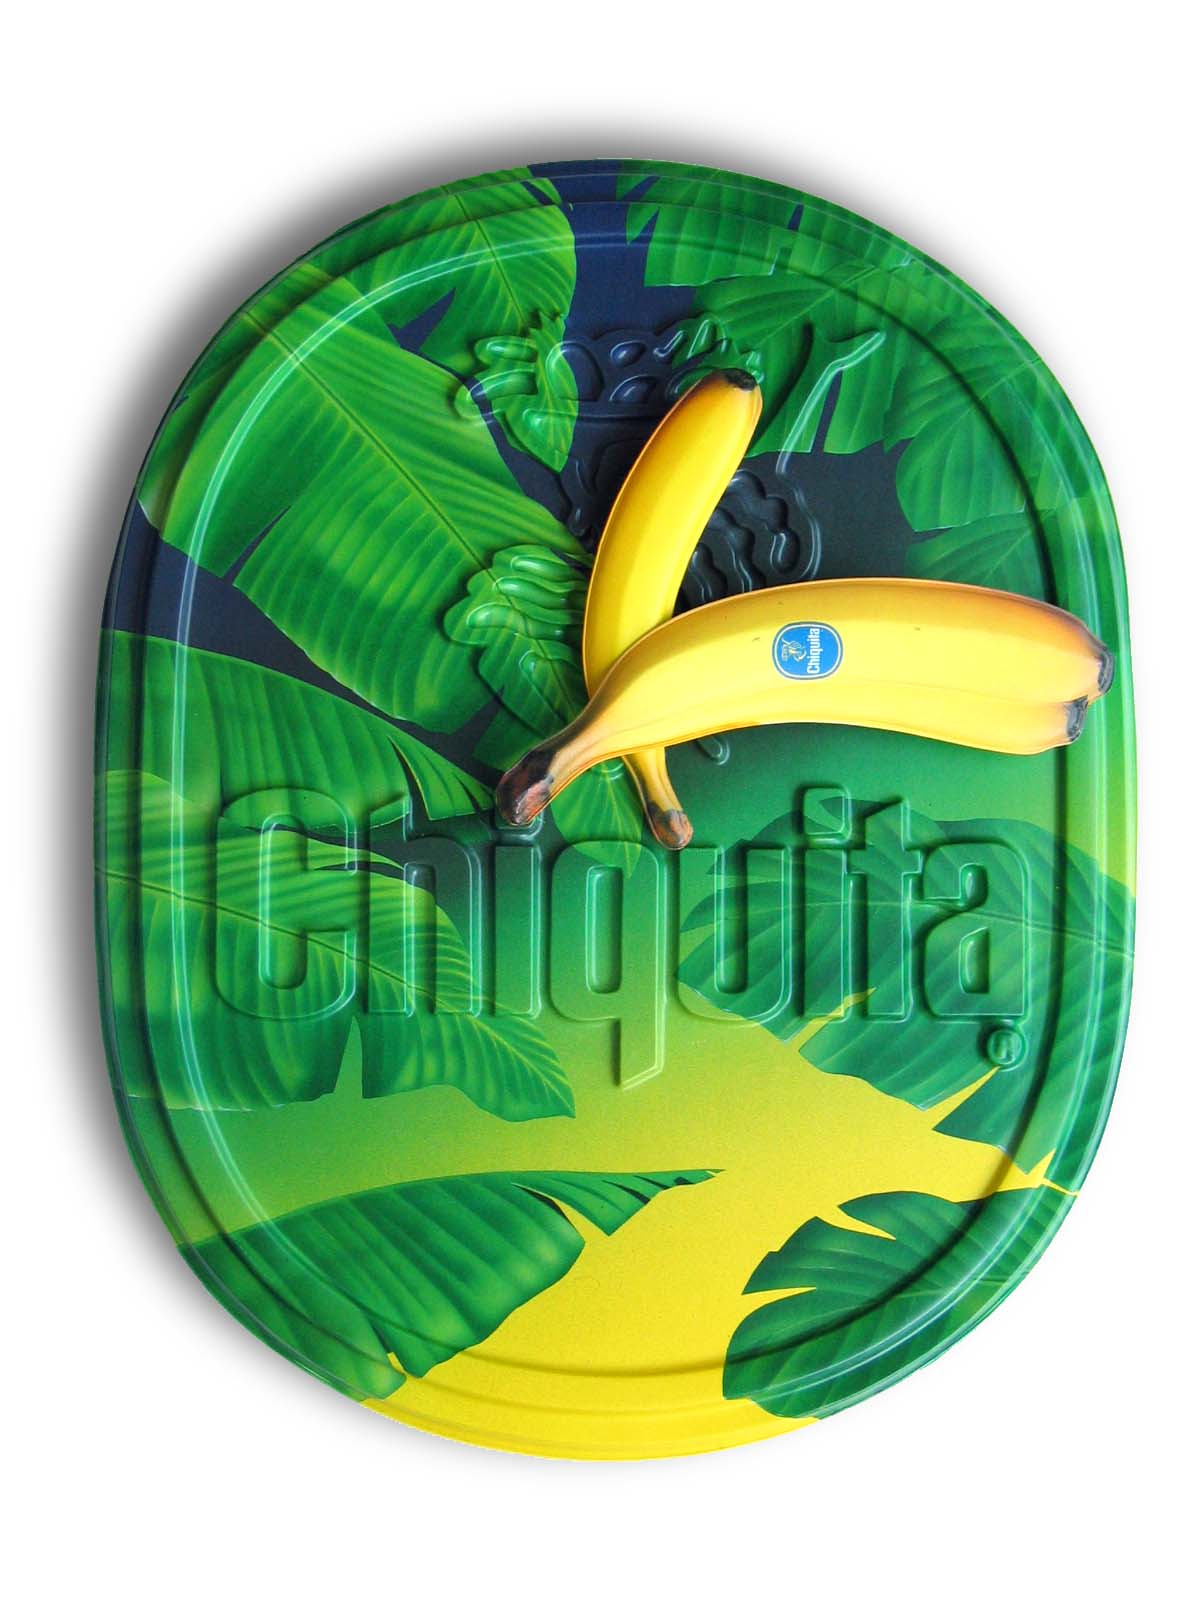 Chiquita_ur.jpg